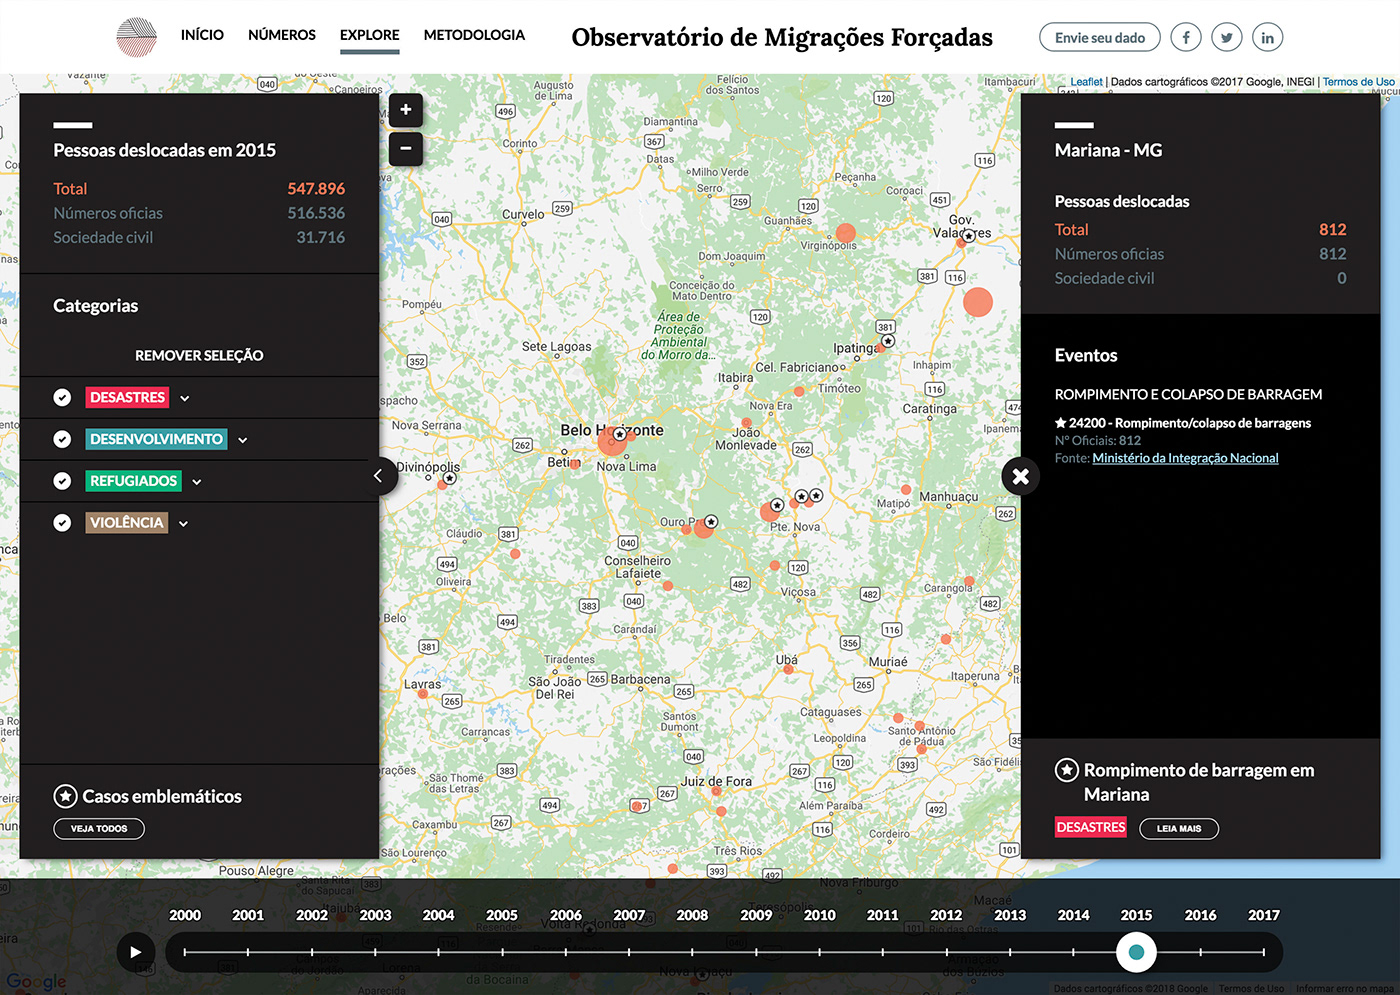 migration disaster forced displacement observatory violence crime Refugees map dataviz data visualization